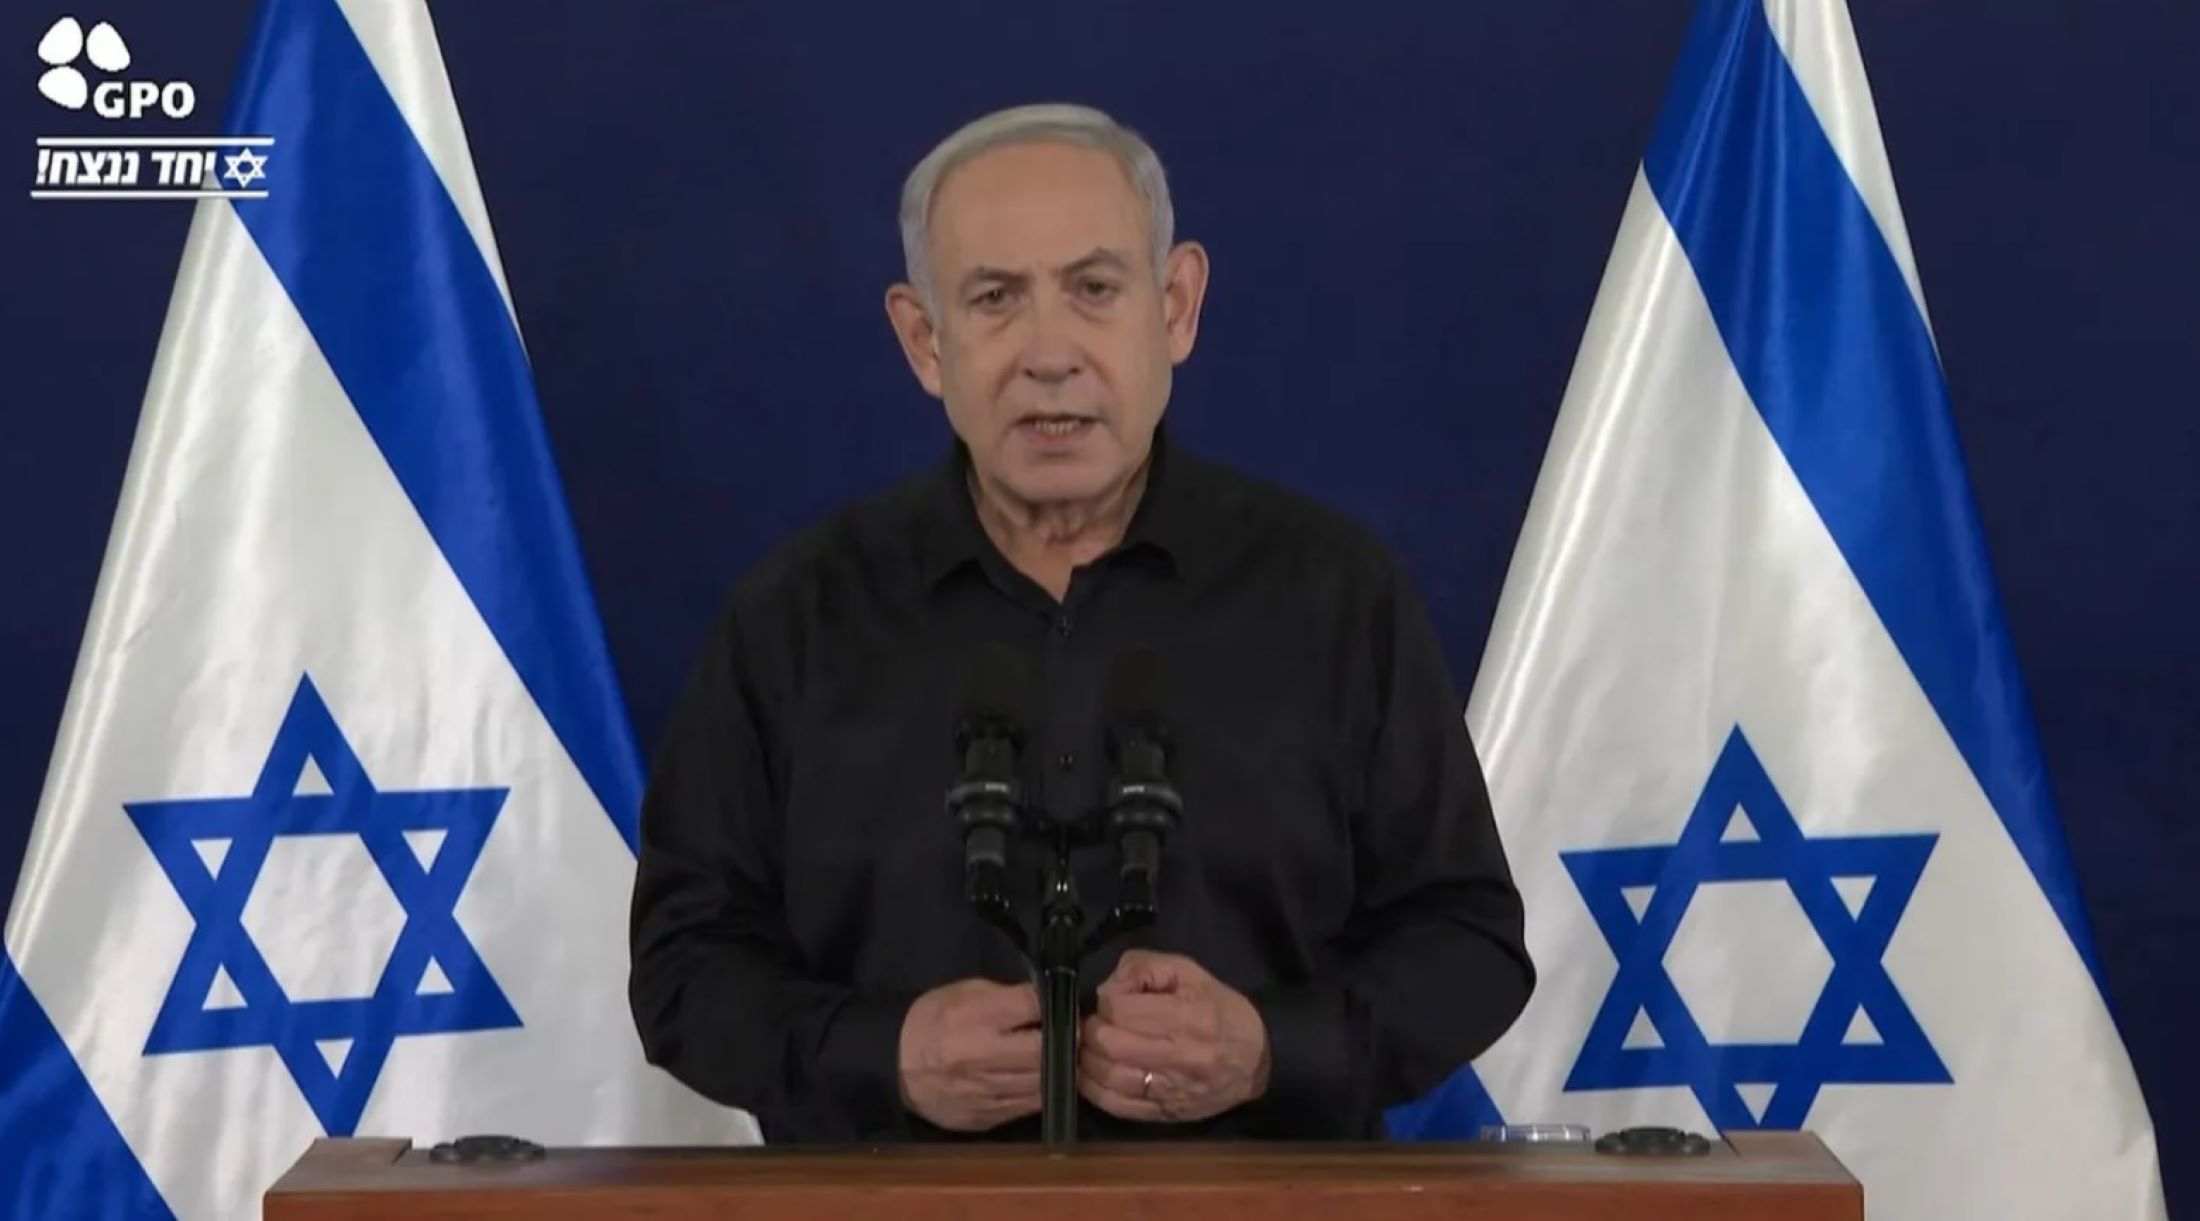 Netanyahu descarta categóricamente un alto el fuego en Gaza: "Sería rendirse a la barbarie"